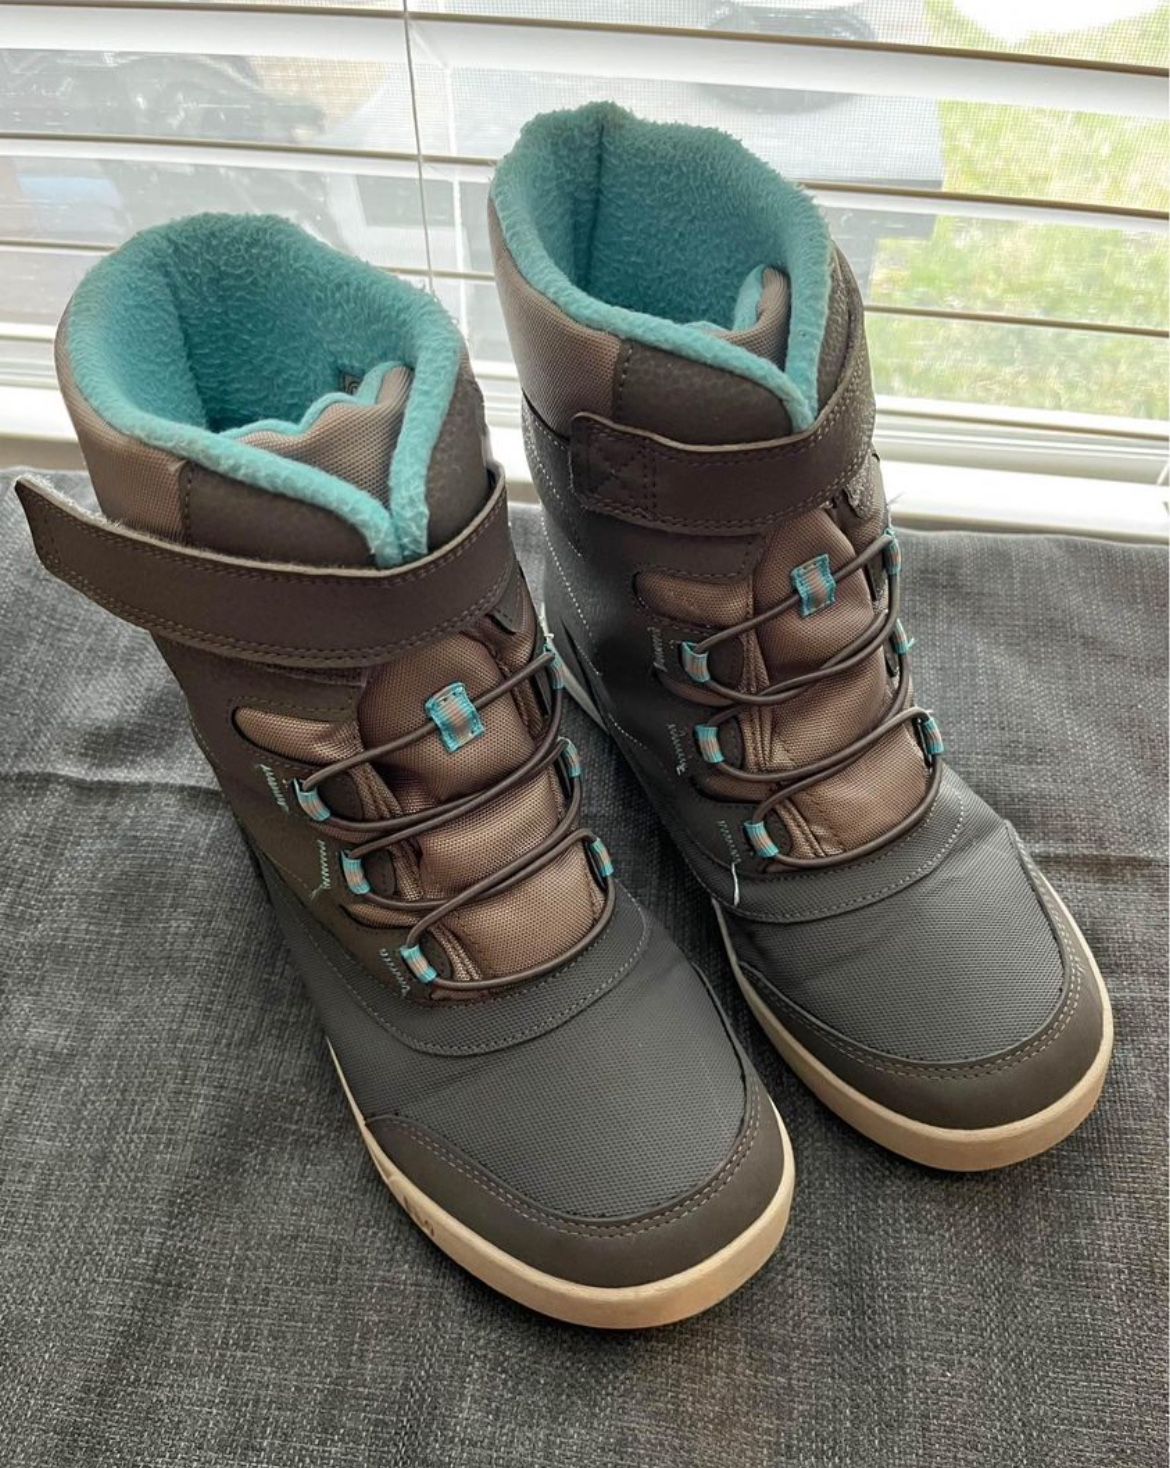 Merrel Snow Boots Size 5y